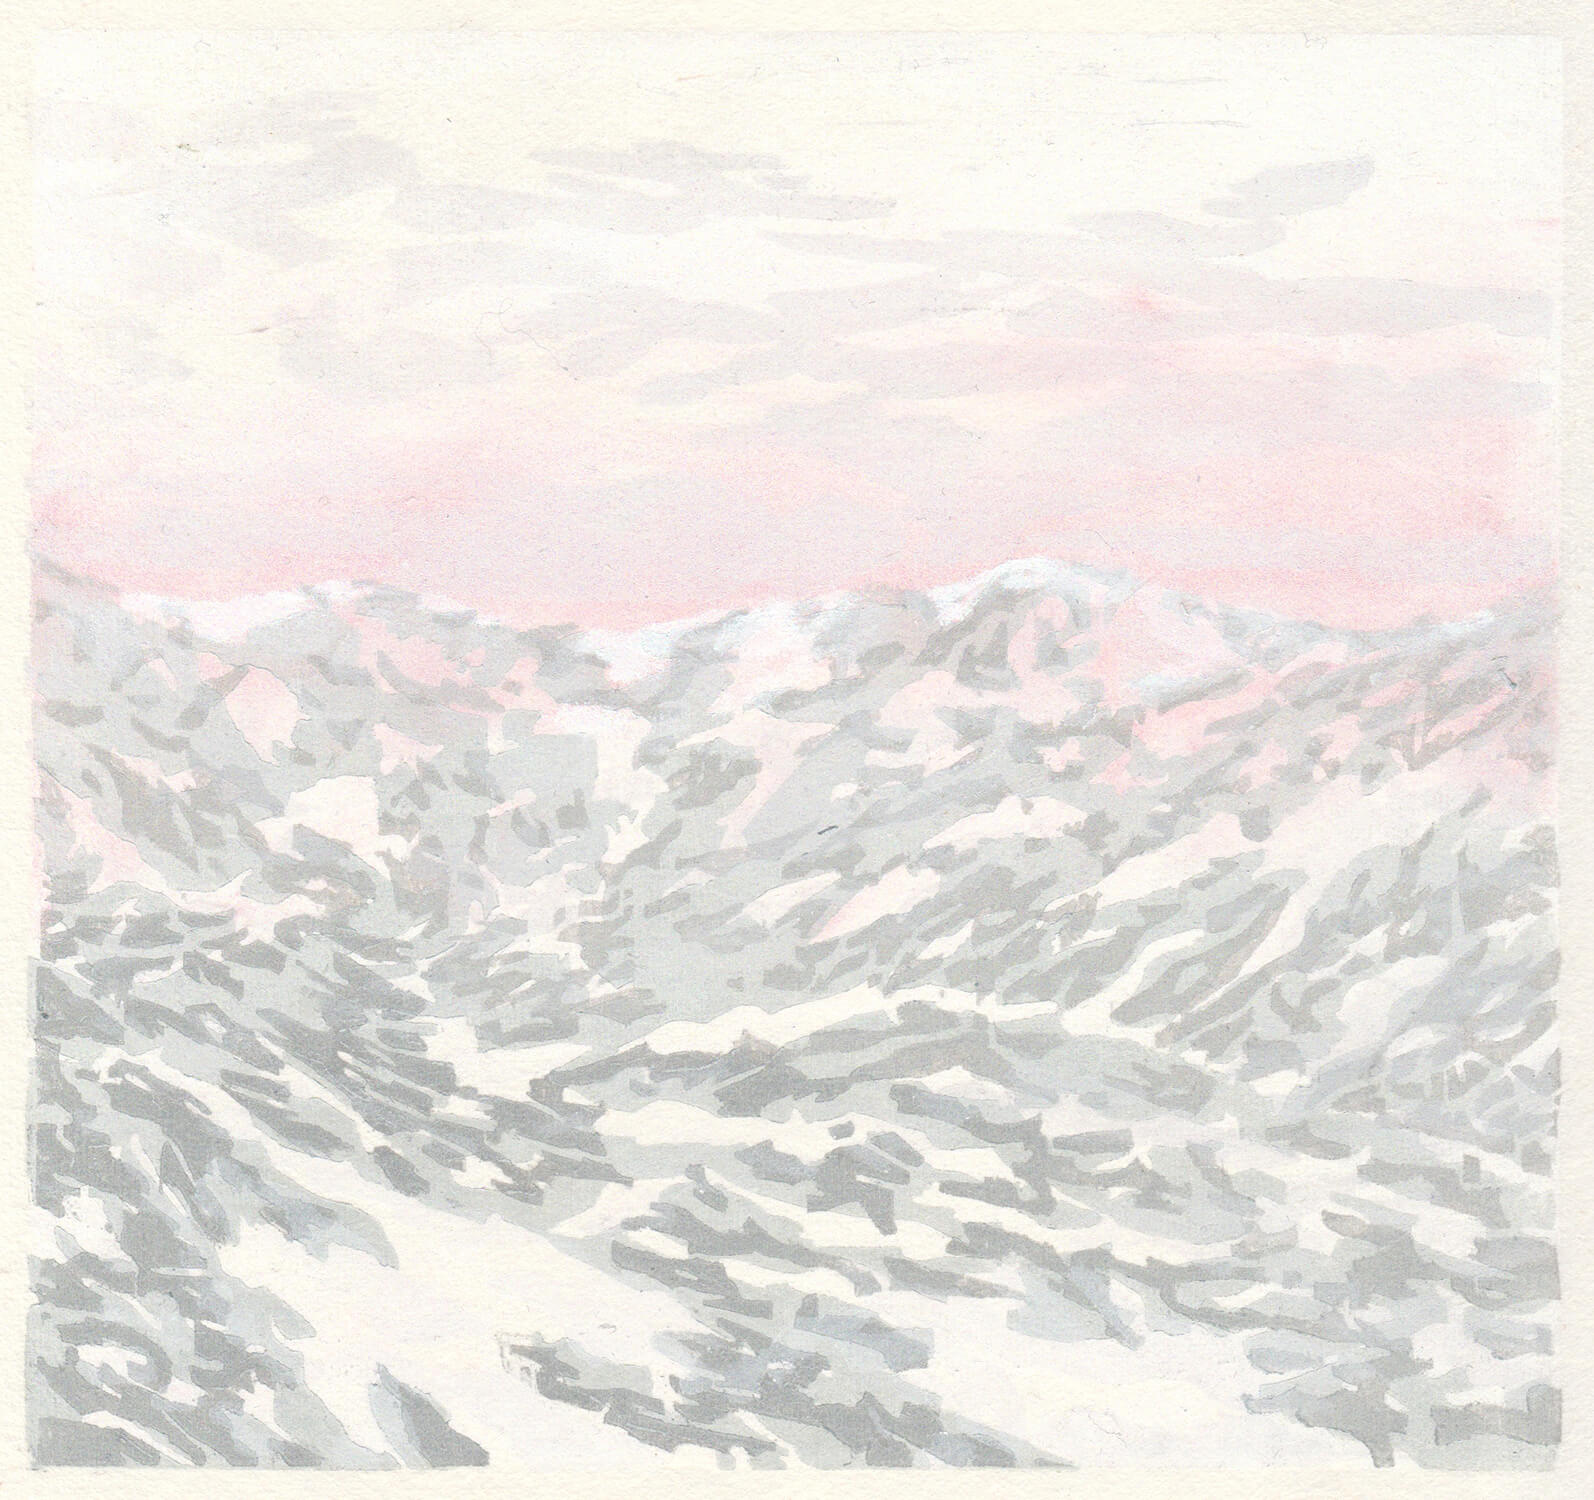 Martina Altschäfer, Wintersperre, 2021, Holzschnitt, Auflage: 30, 19 x 20 cm